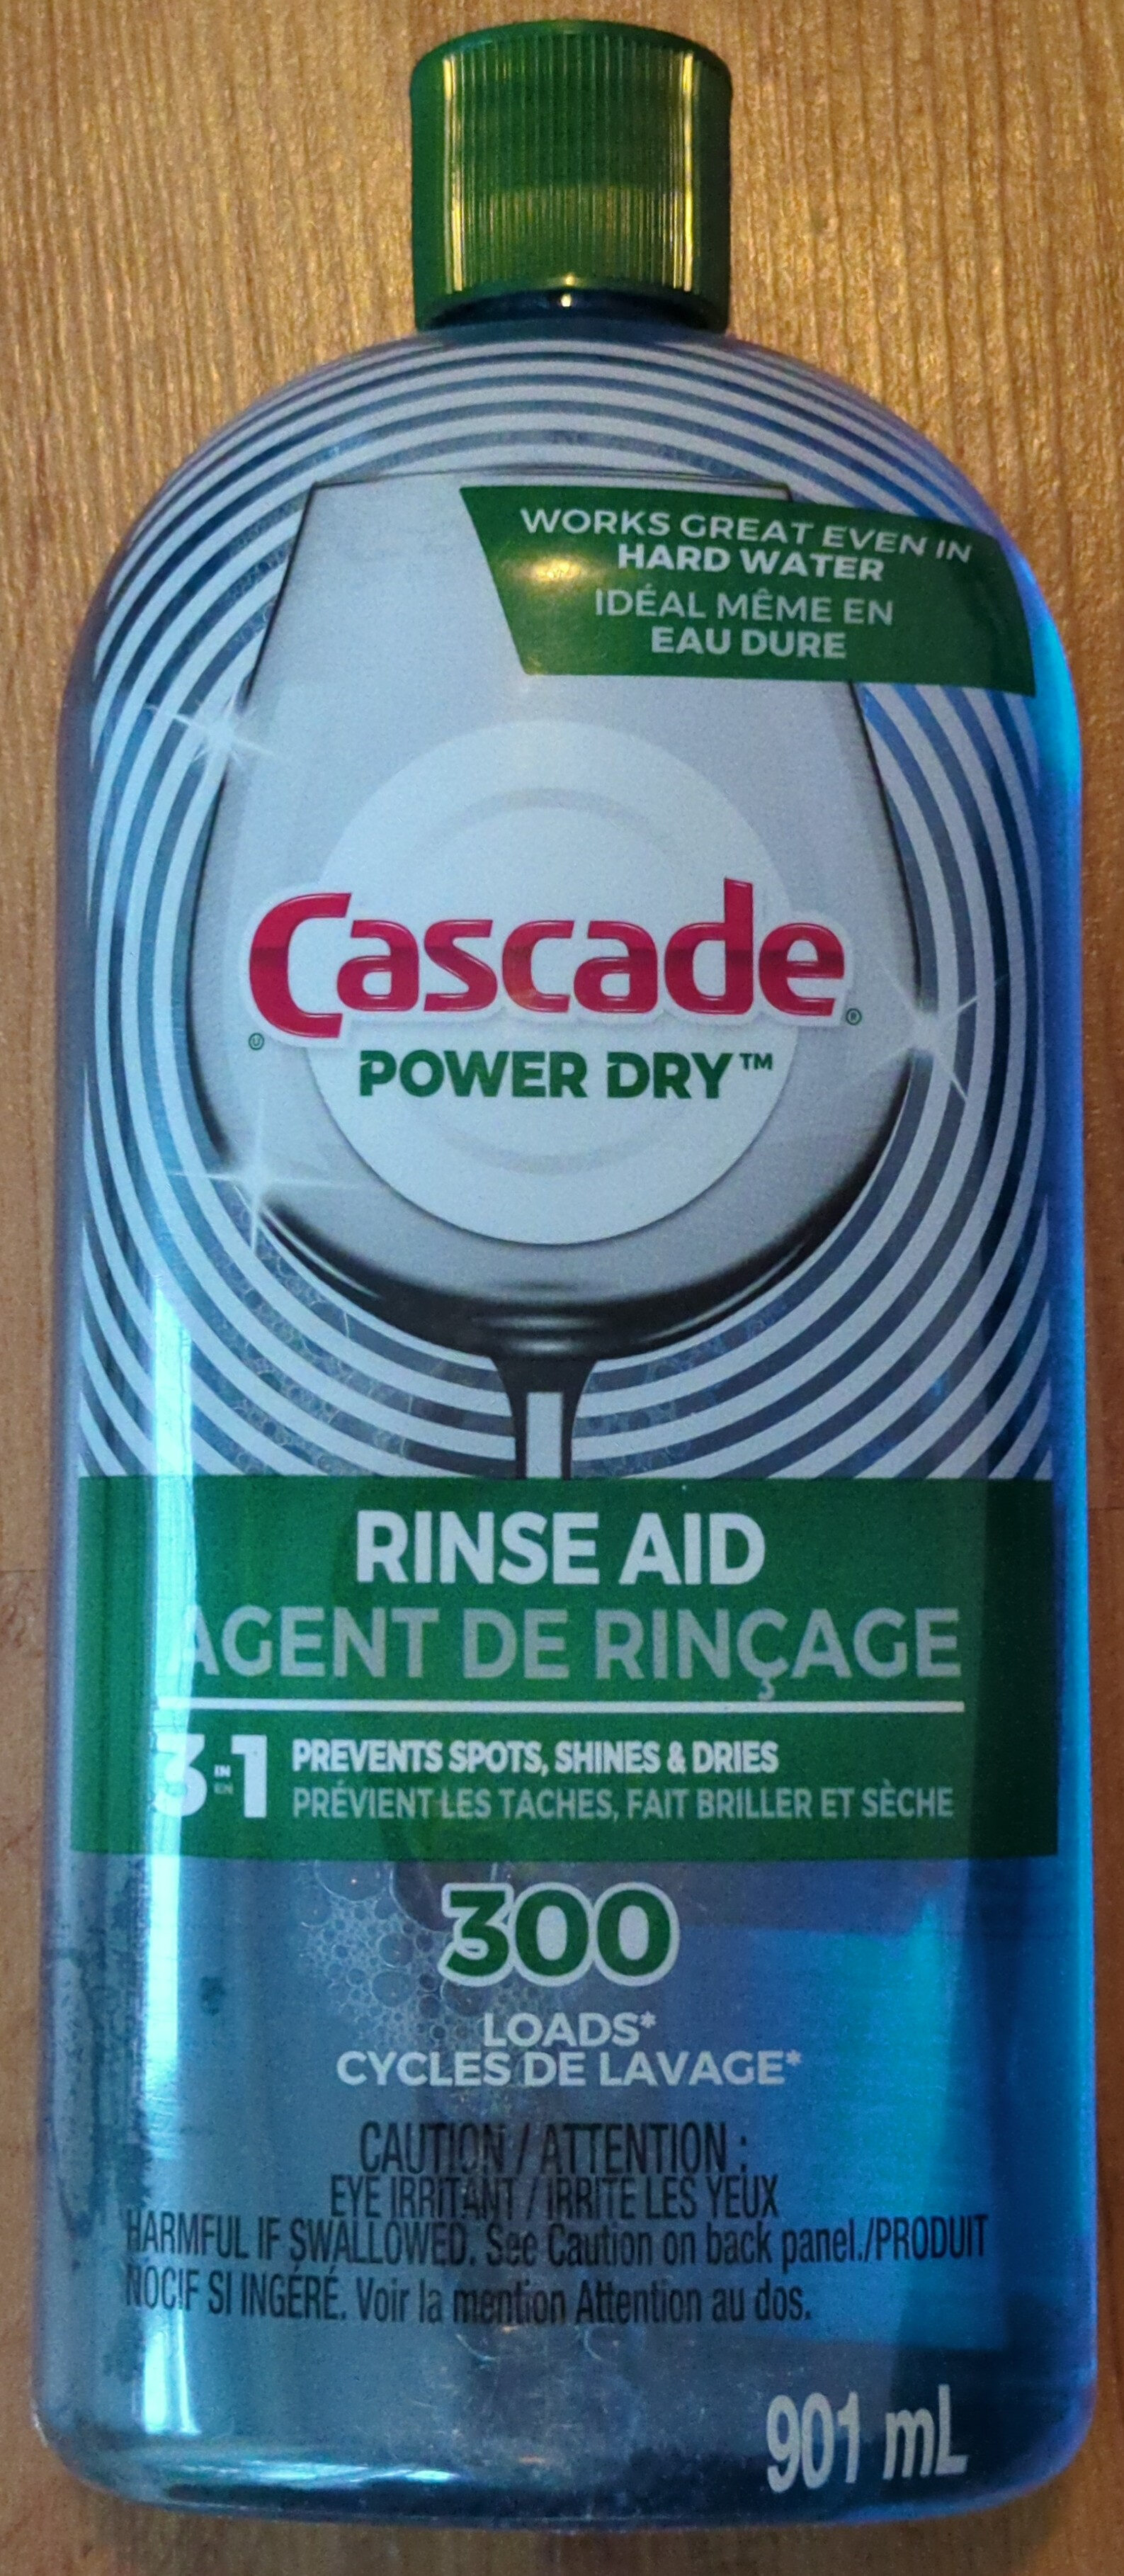 Agent de rinçage Cascade Power Dry - Product - fr